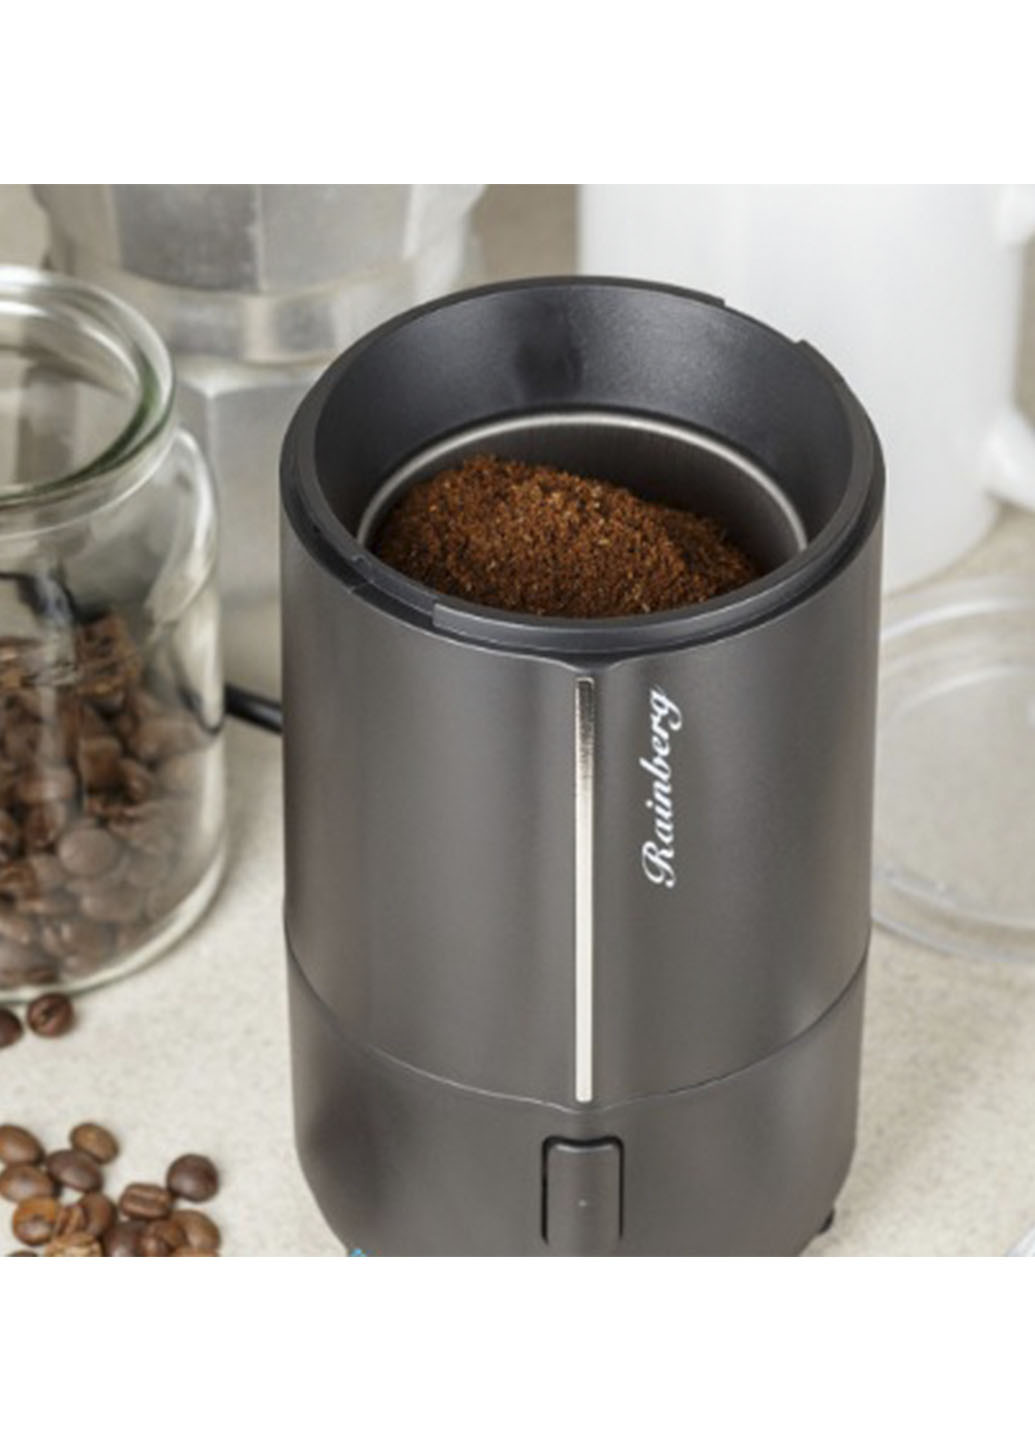 Роторная кофемолка-измельчитель электрическая Rainberg на 50 грамм 300 Ватт черная Good Idea (251769404)